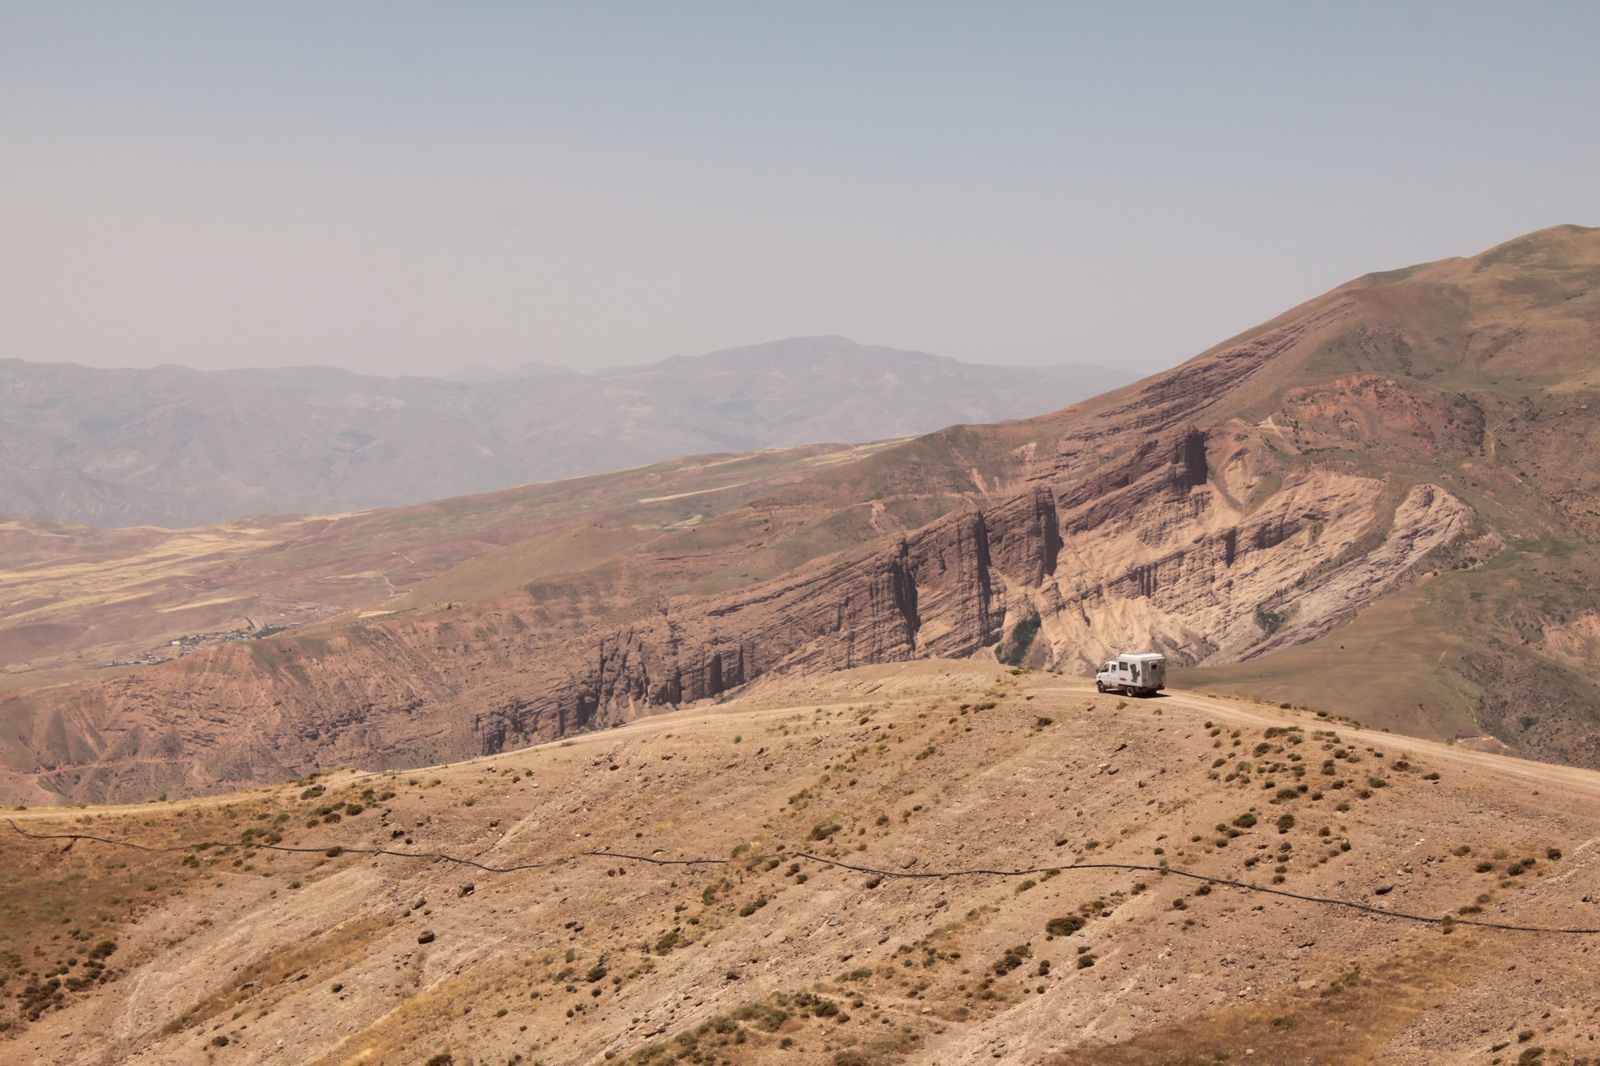 Offroad-Overlanding-Weltreise mit Kindern - Schotterpisten im Elburs-Gebirge, Iran.